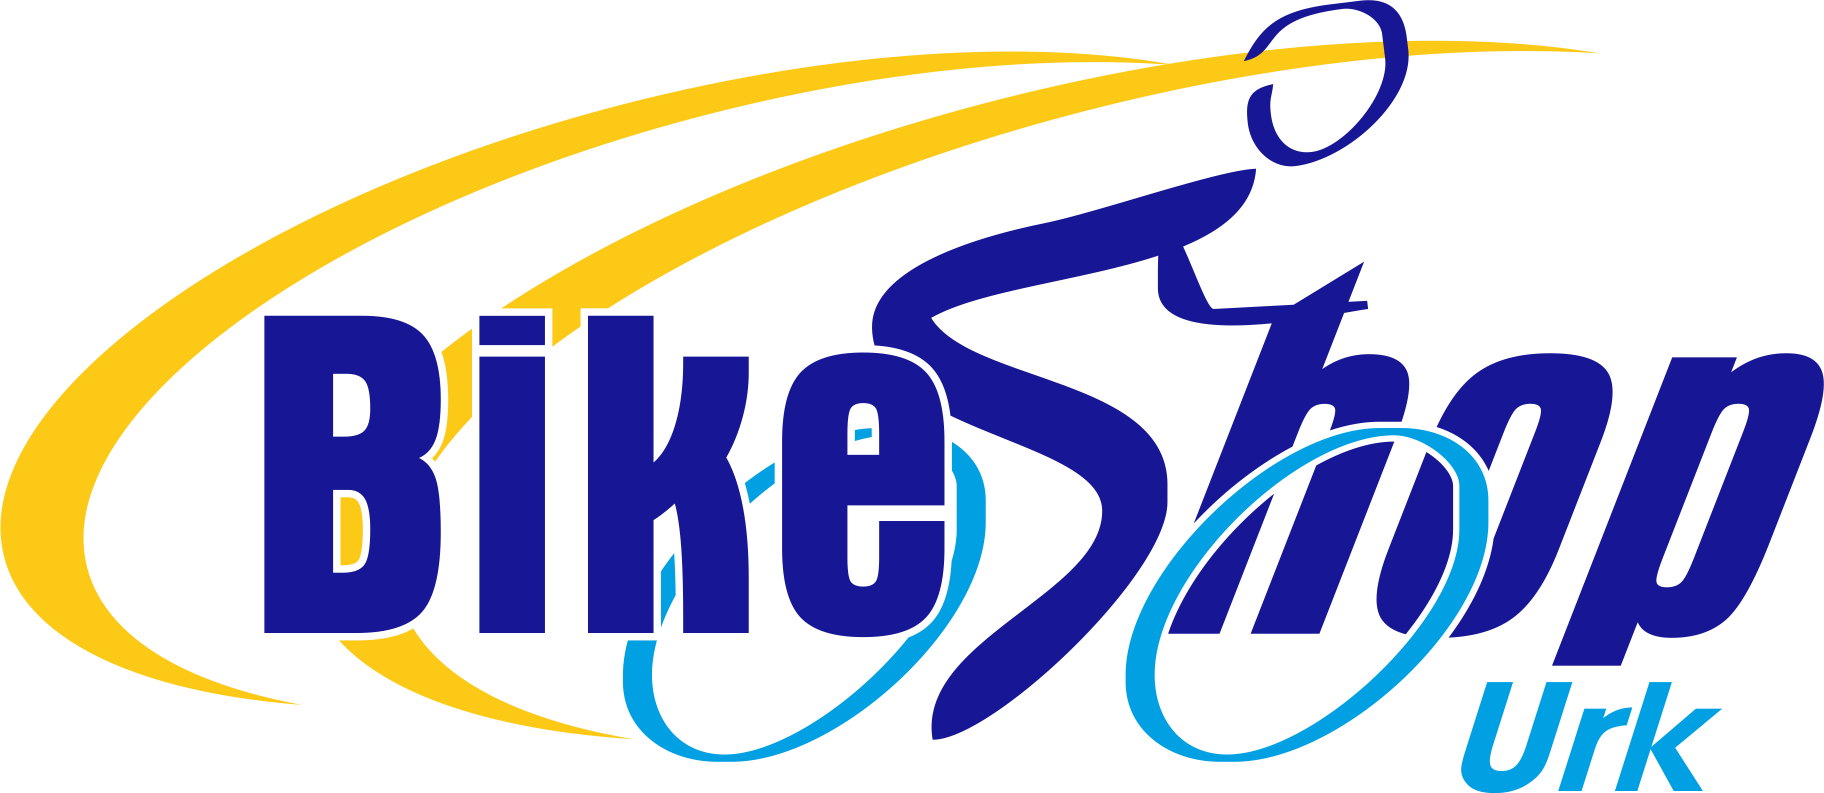 Logo Bikeshop Urk